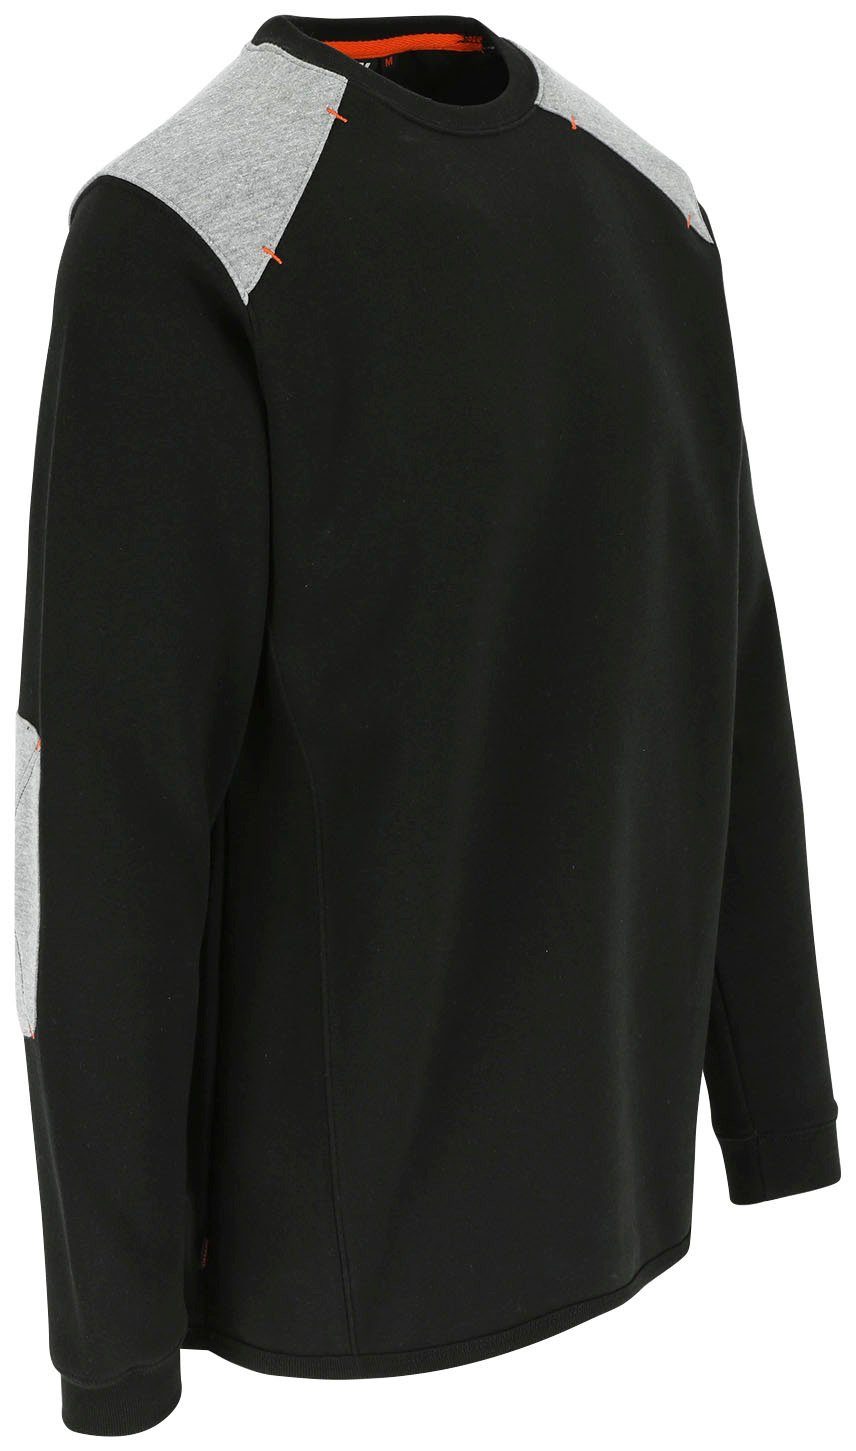 Herock Rundhalspullover Artemis Sweater schwarz Langes - Tragegefühl Rückenteil Rippstrick Kragen - weiches